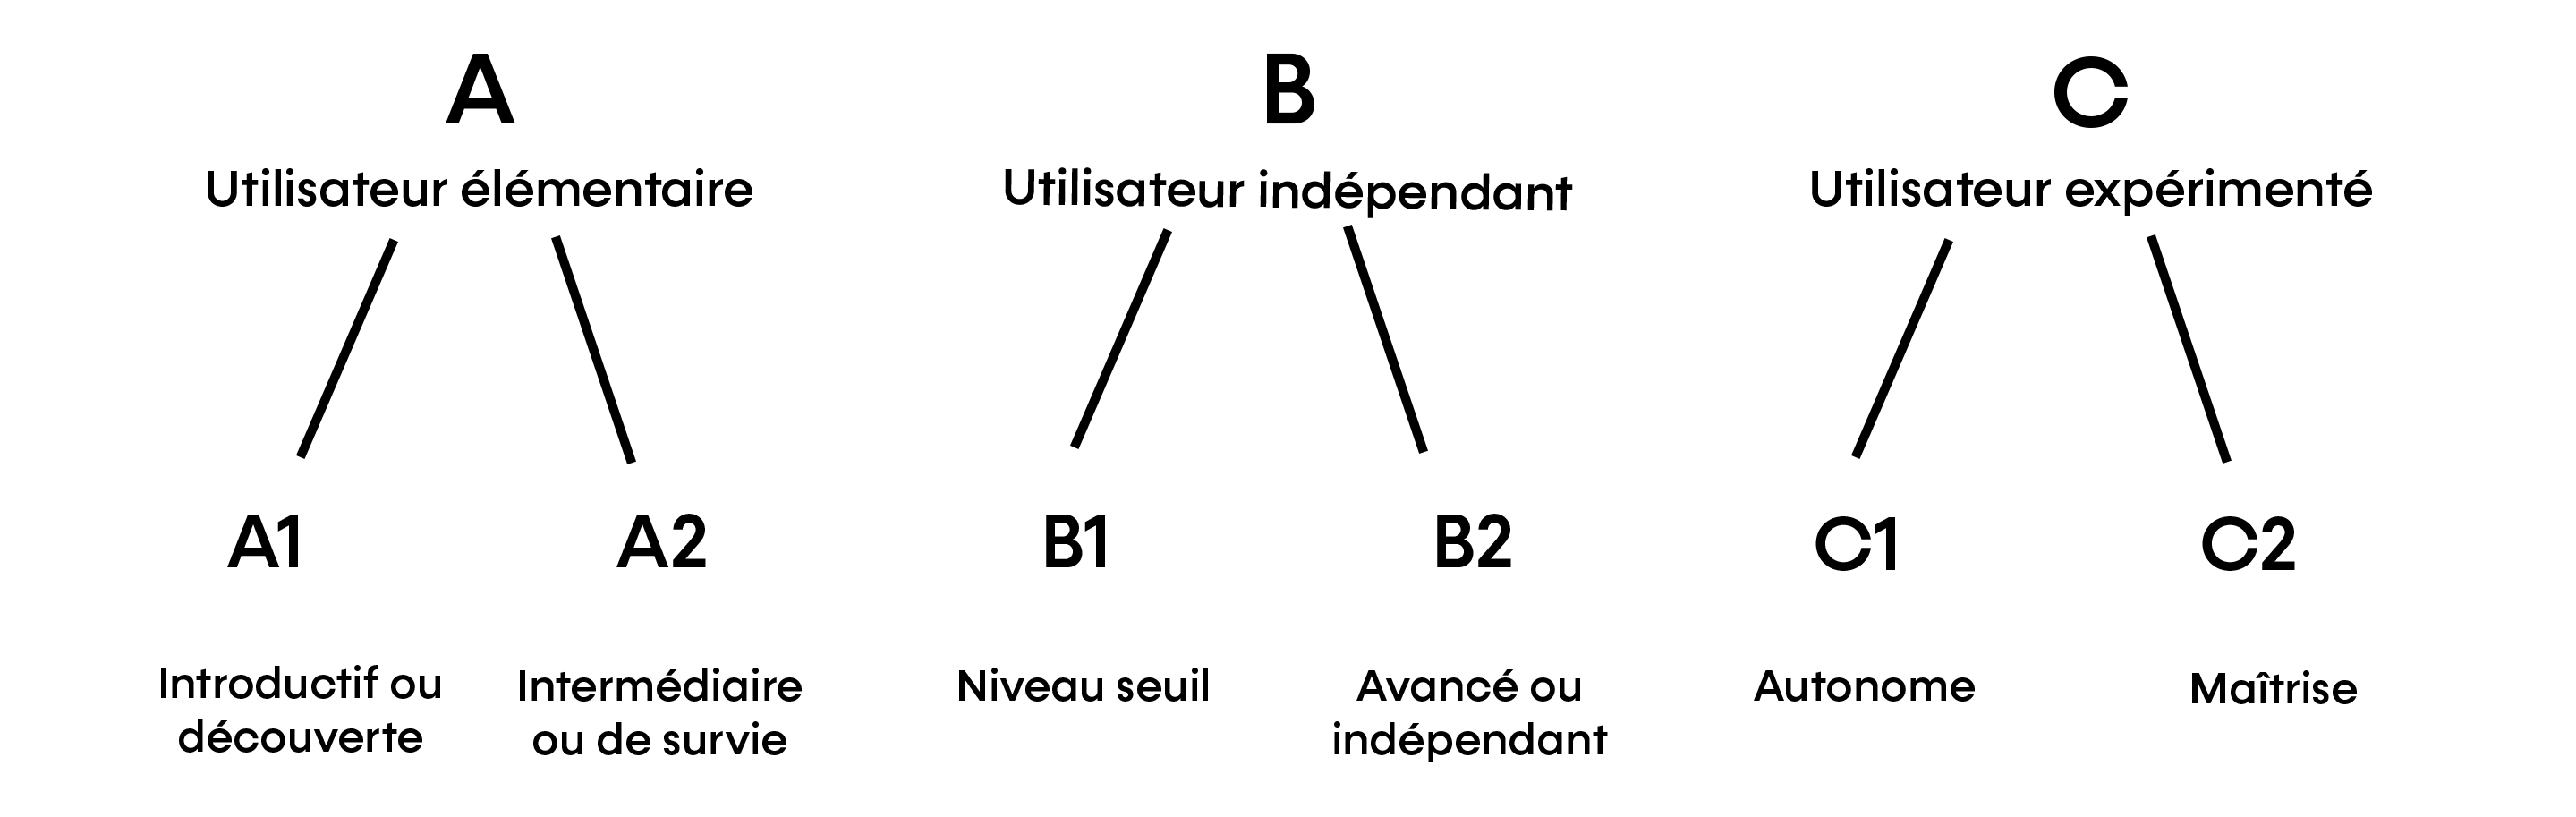 CECRL_Arborescence en 3 niveaux généraux du A - utilisateur élémentaire par le B - utilisateur indépendant au C - utilisateur expérimenté